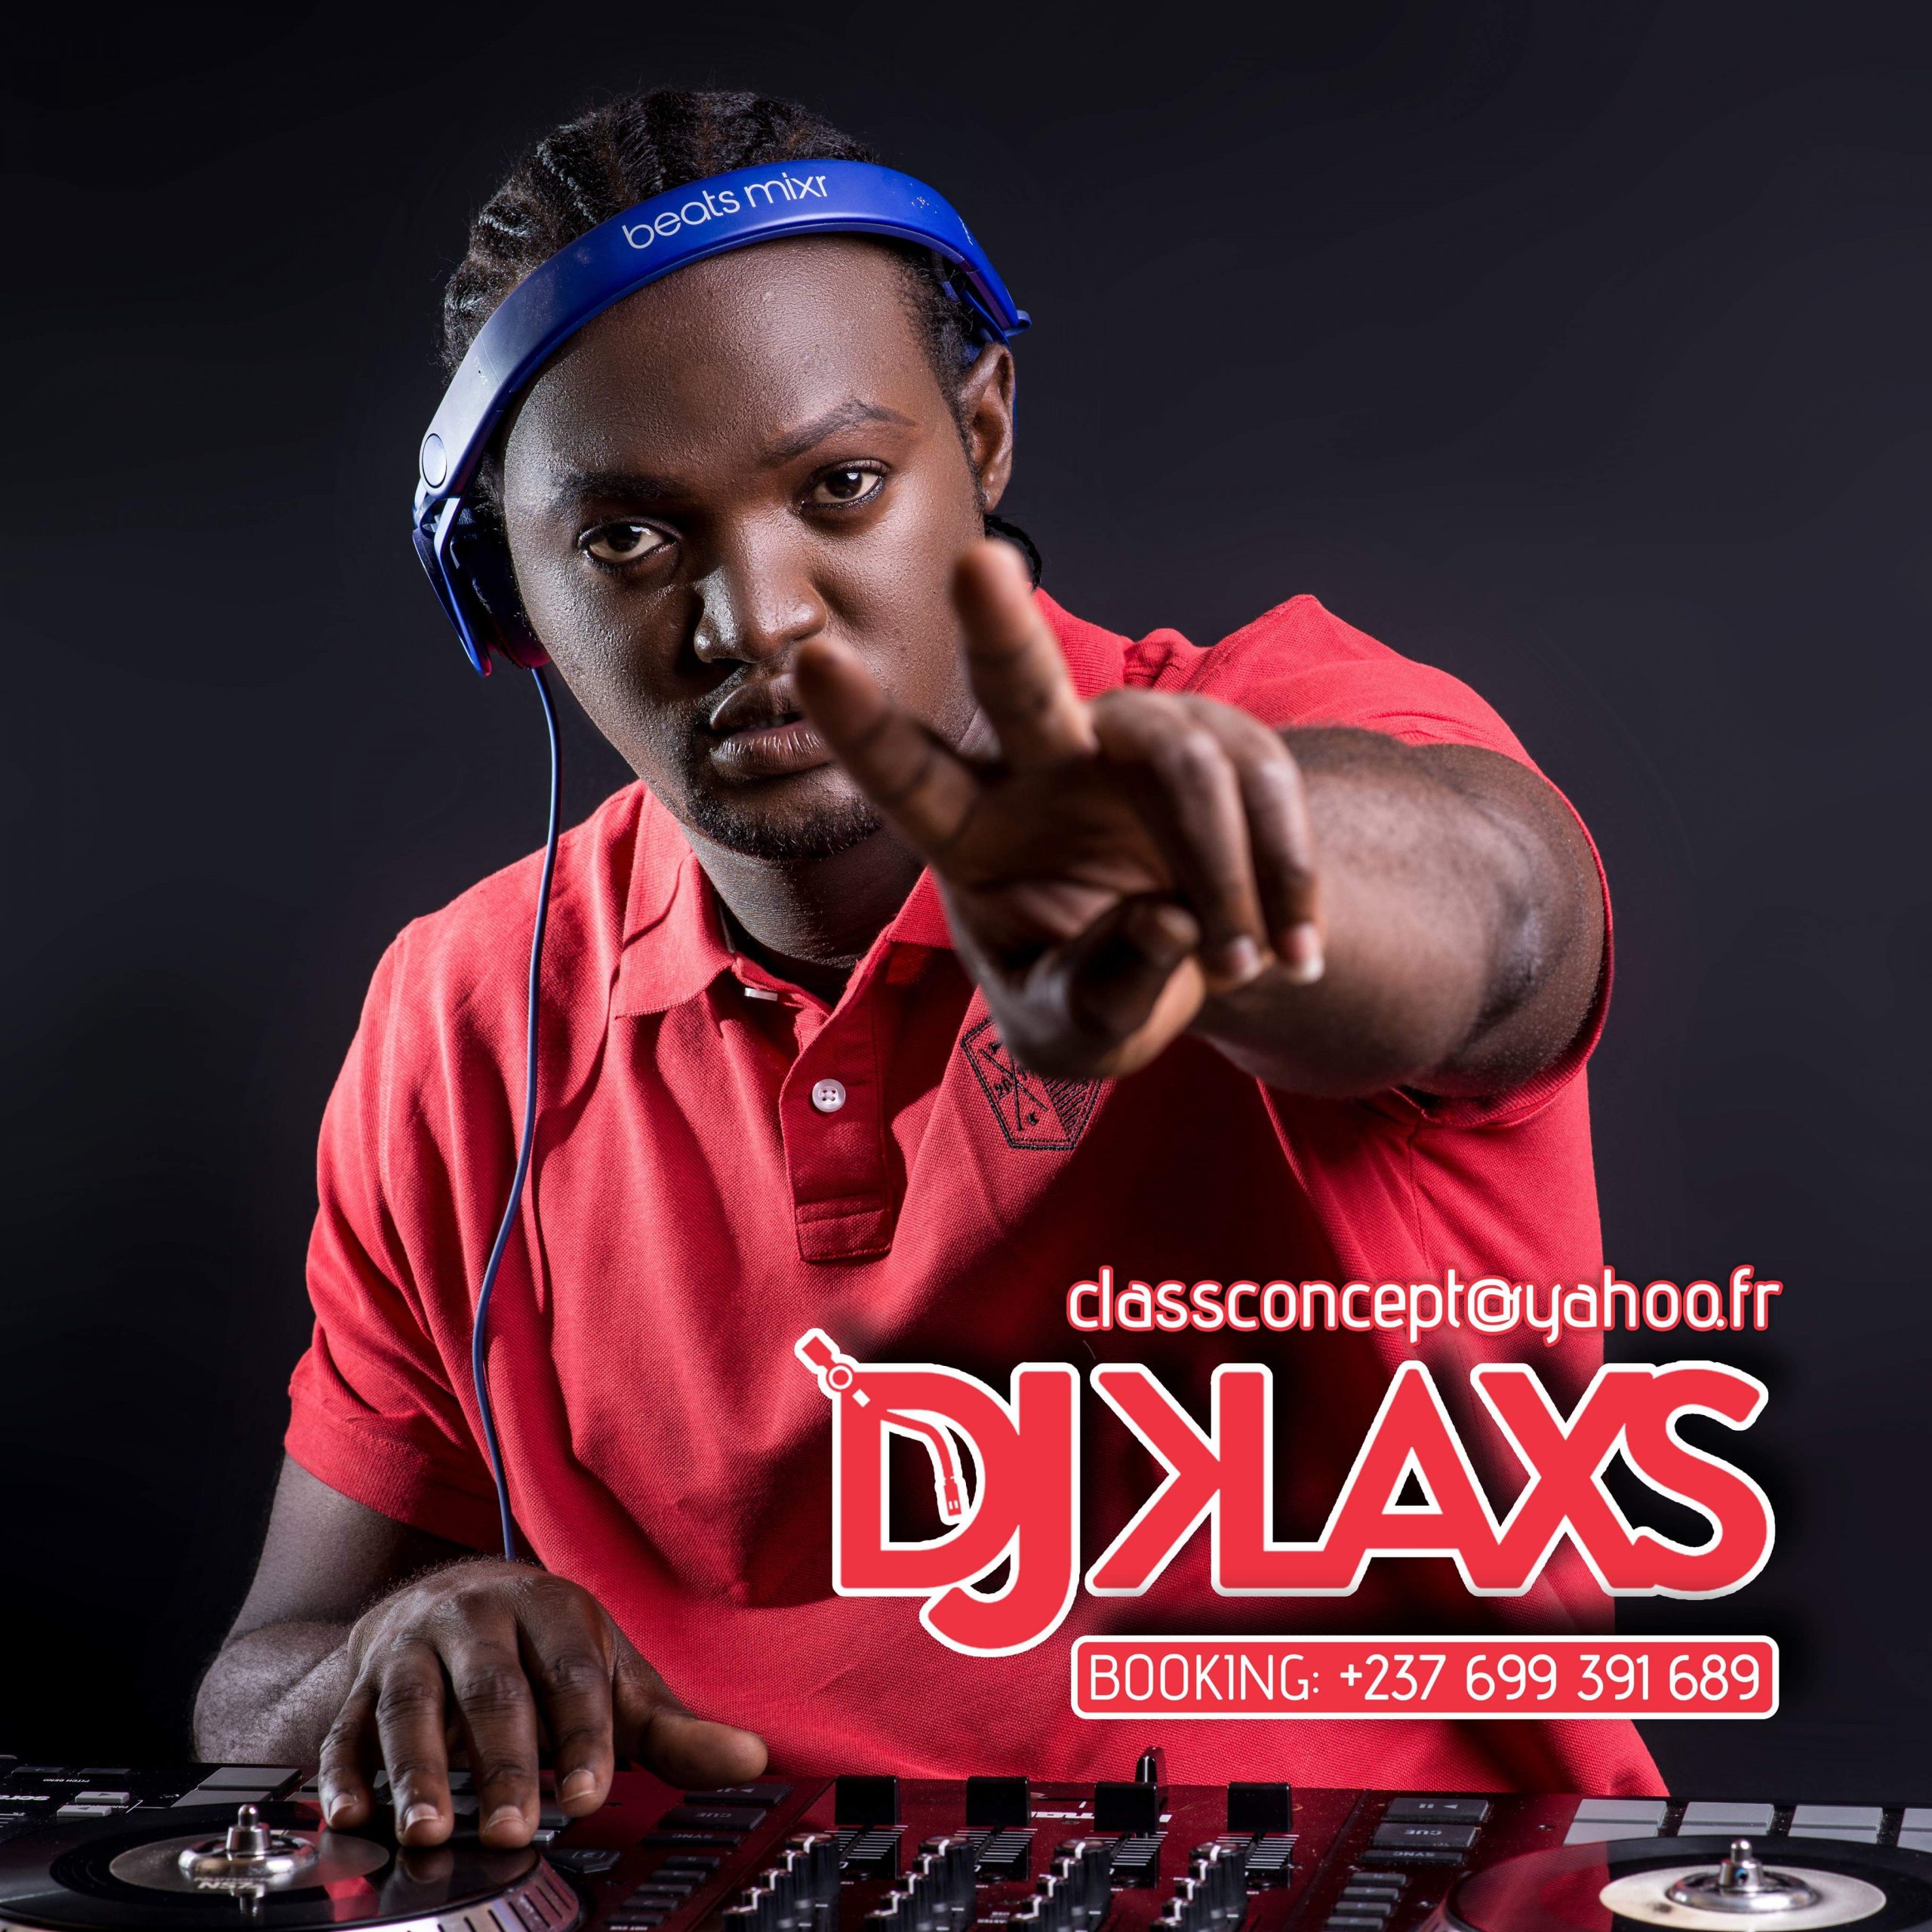 DJ KLAXS